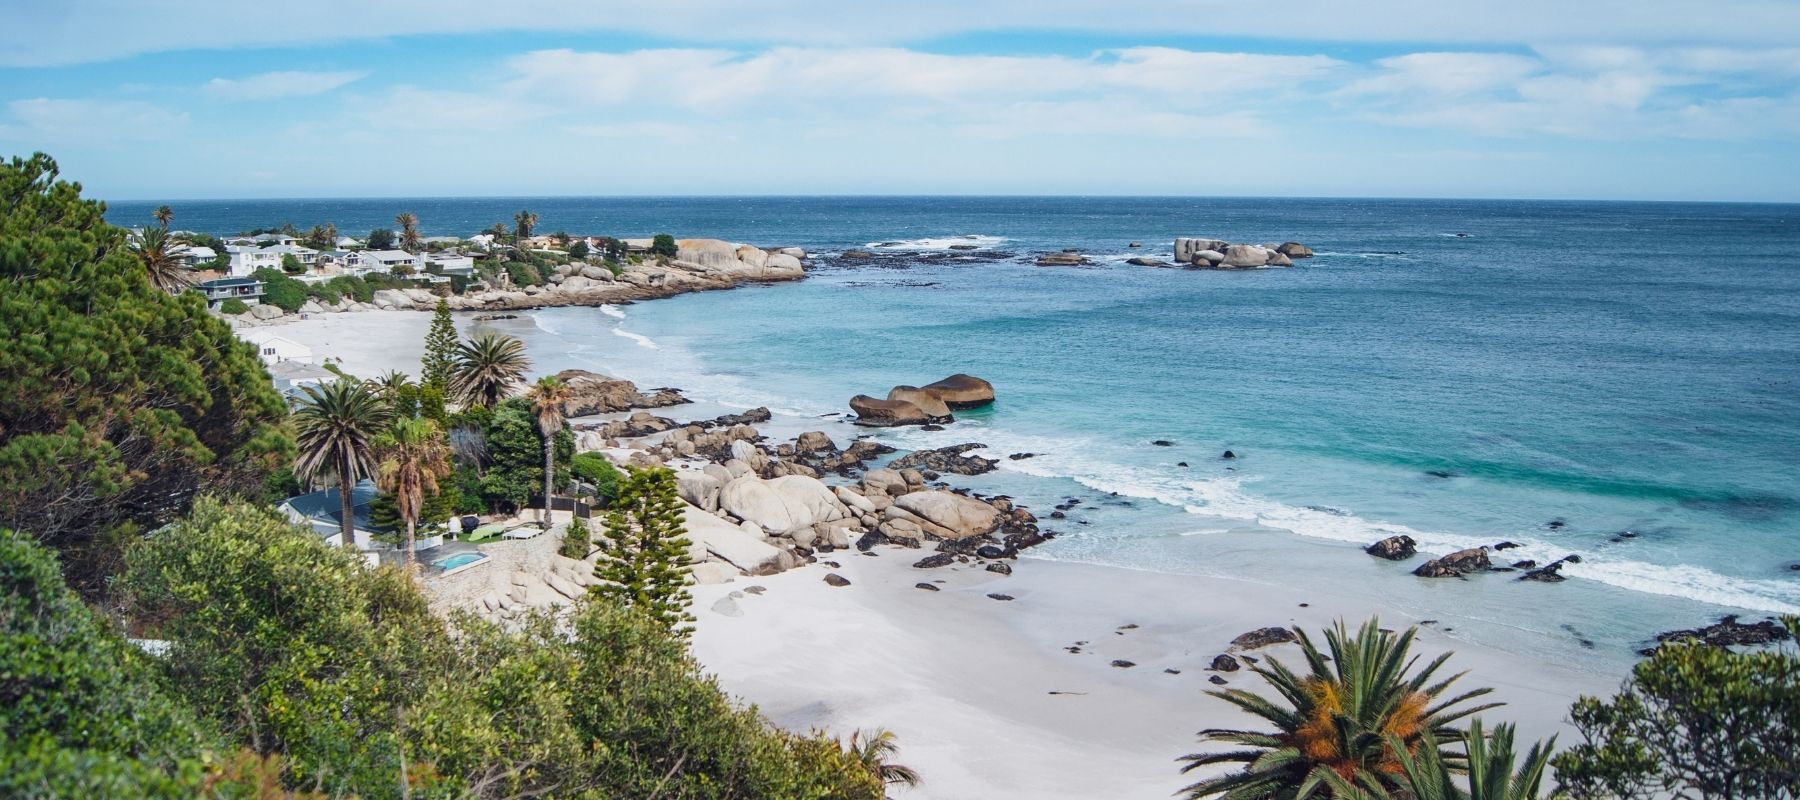 Clifton 1-4 Beaches in Cape Town